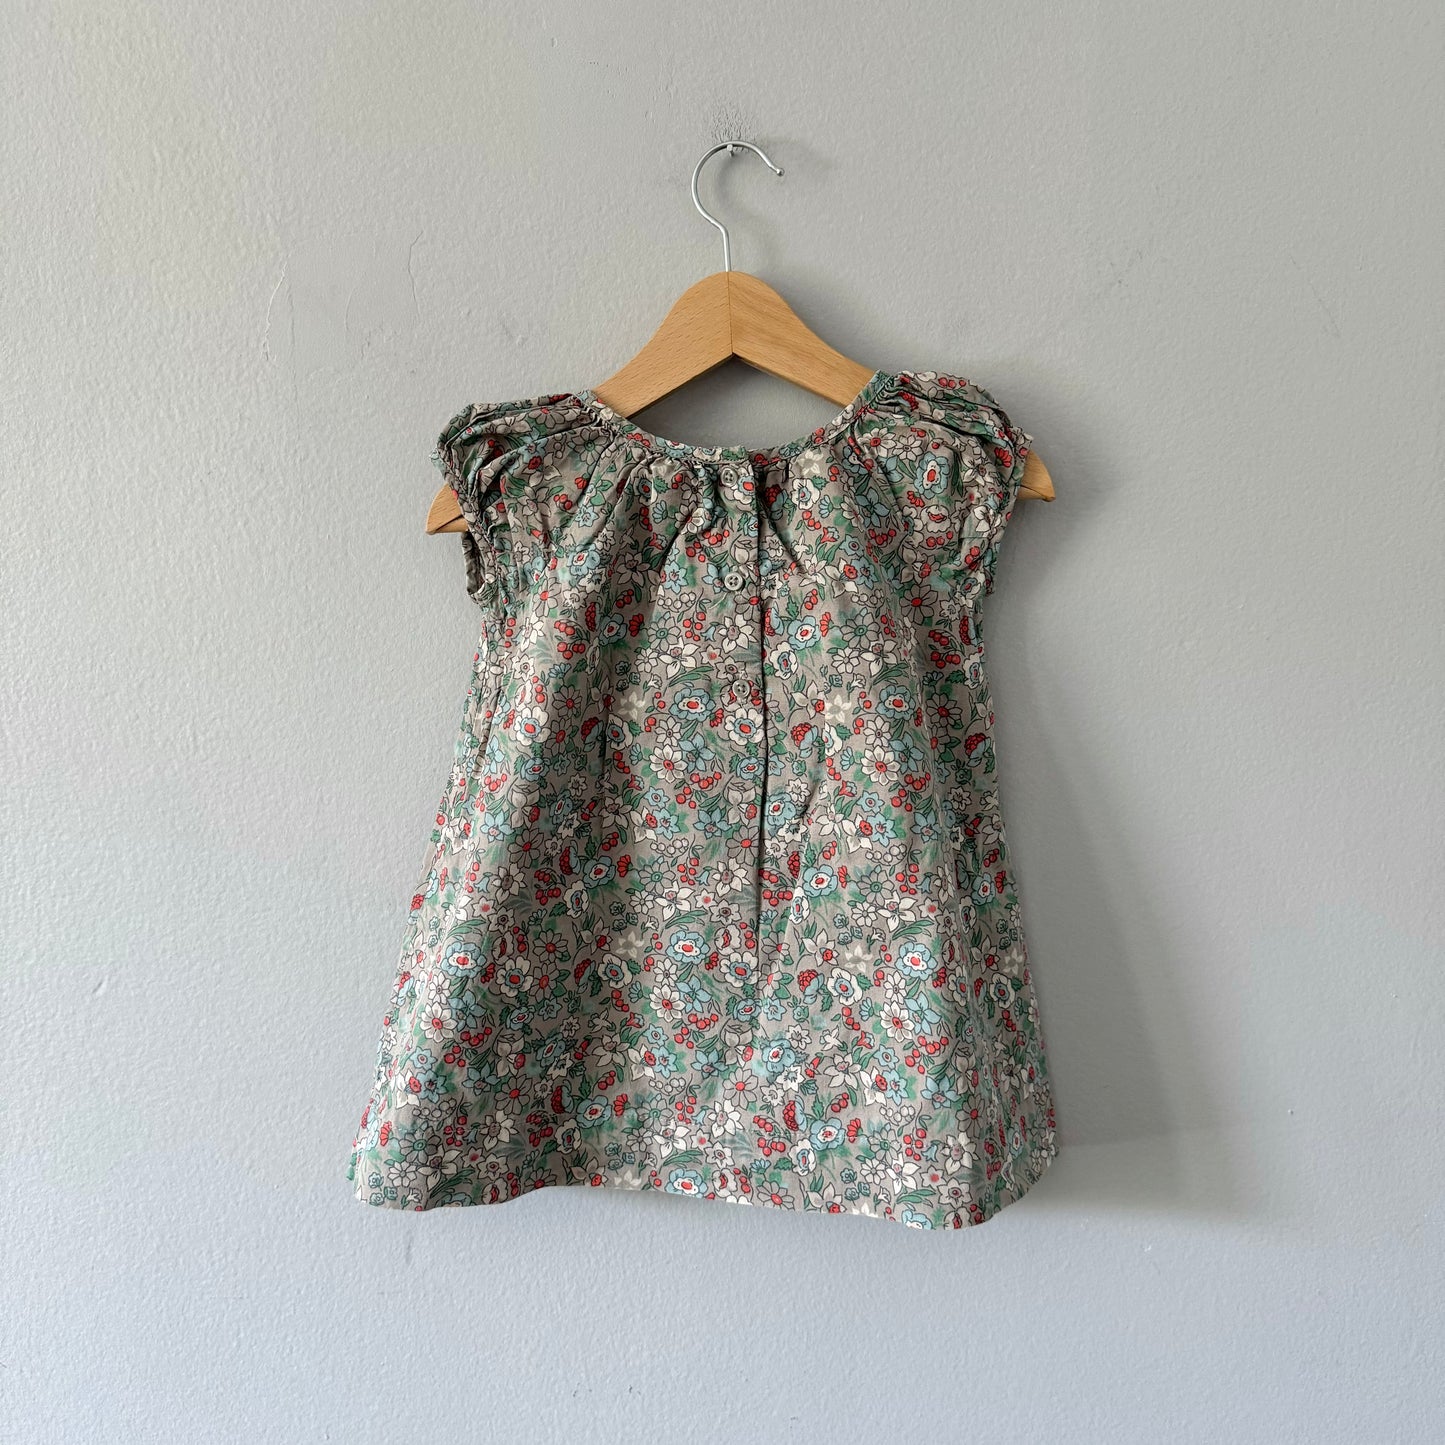 Gap / Grey x floral tank blouse dress / 6-12M